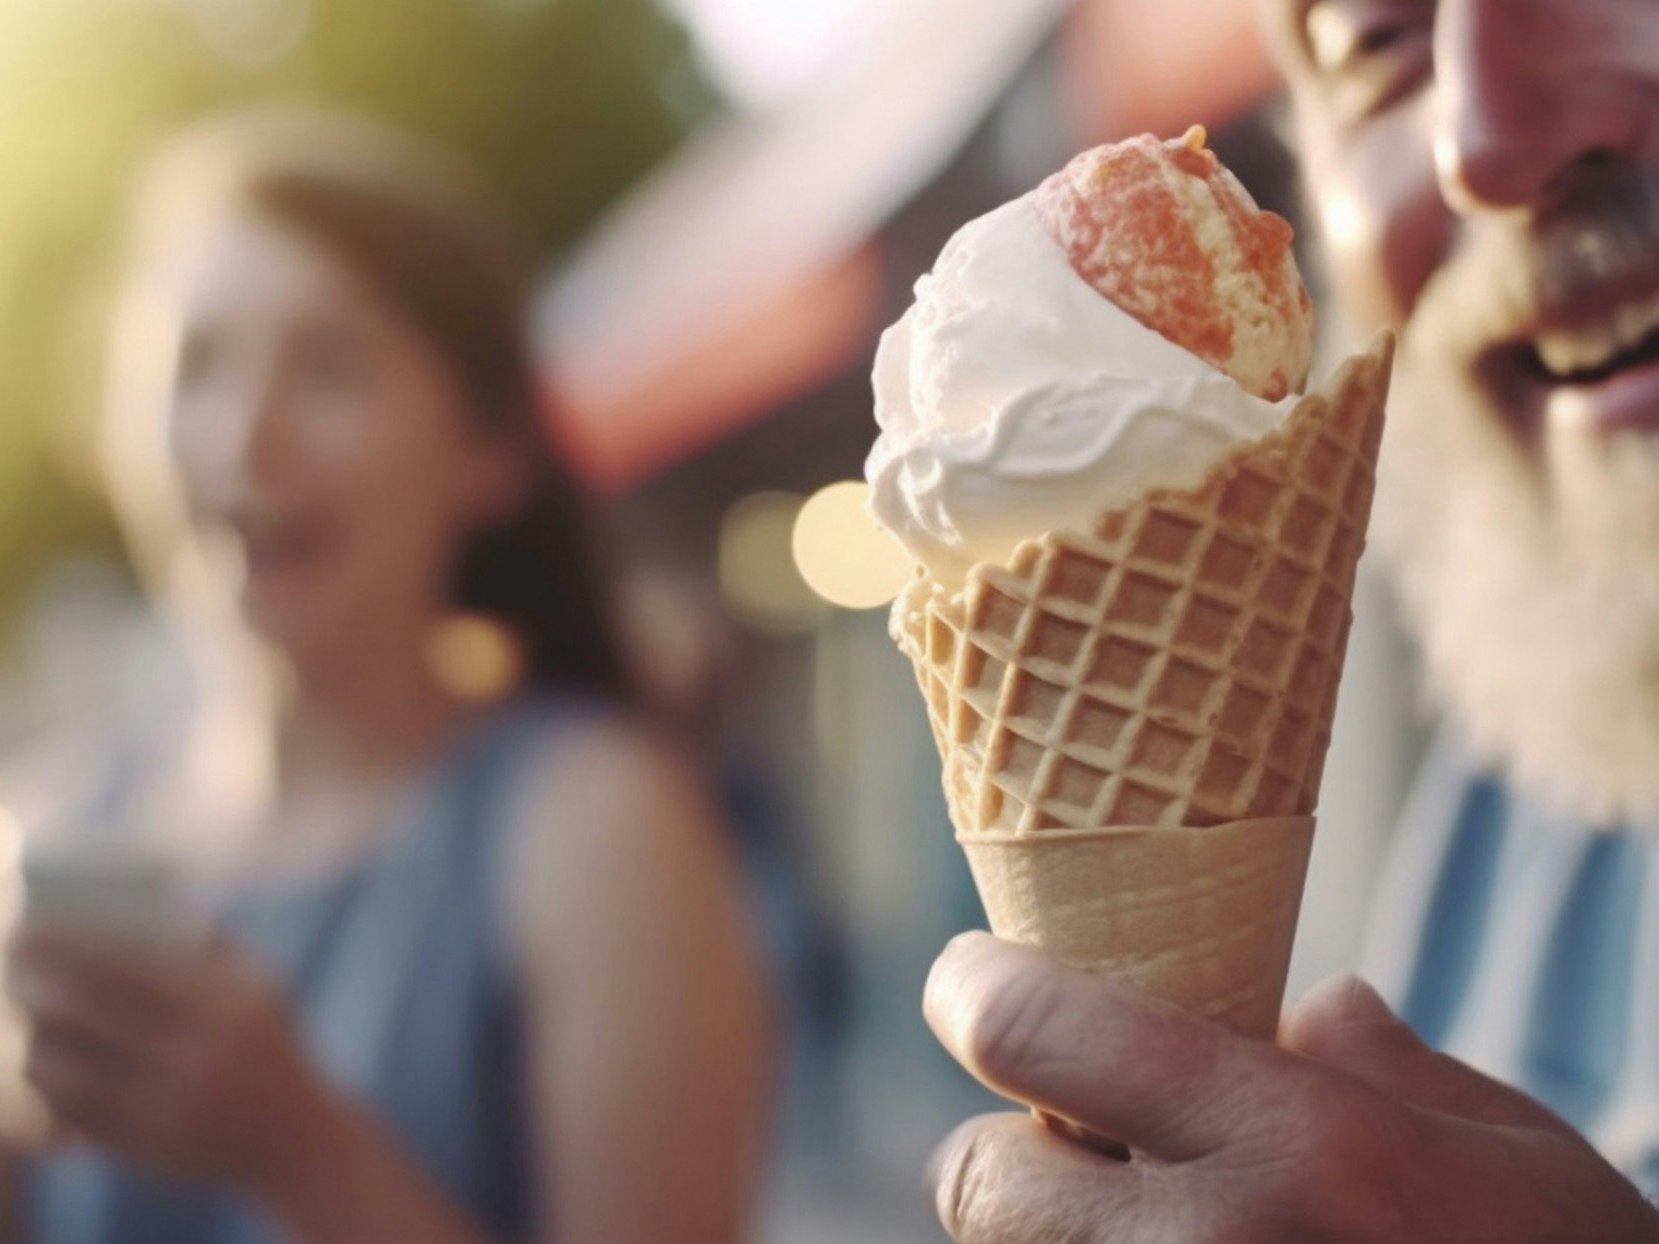 En iskrem med en glad mann og kvinne i bakgrunnen